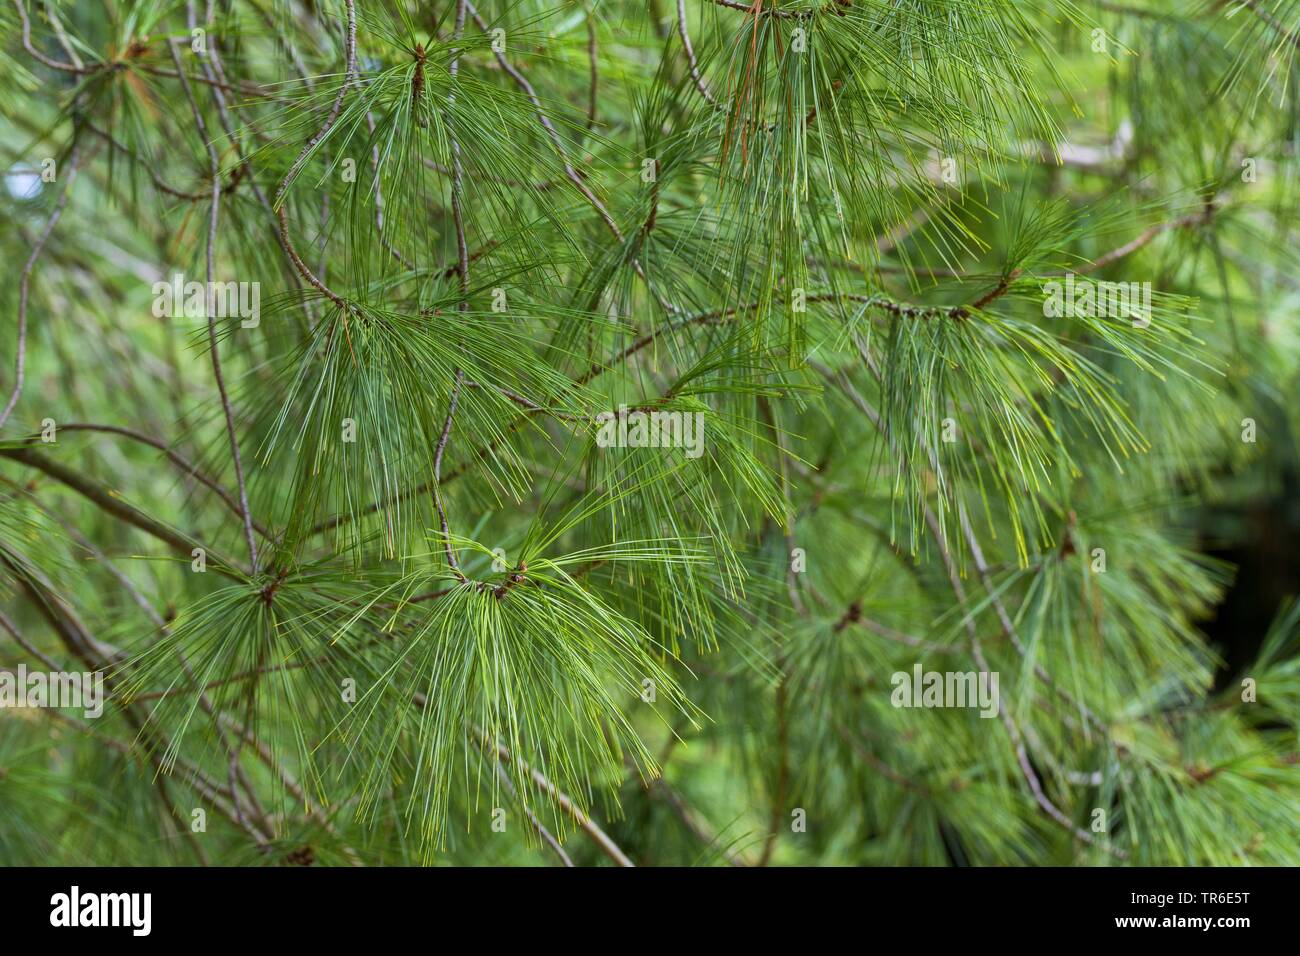 Eastern white pine (Pinus strobus), branch Stock Photo